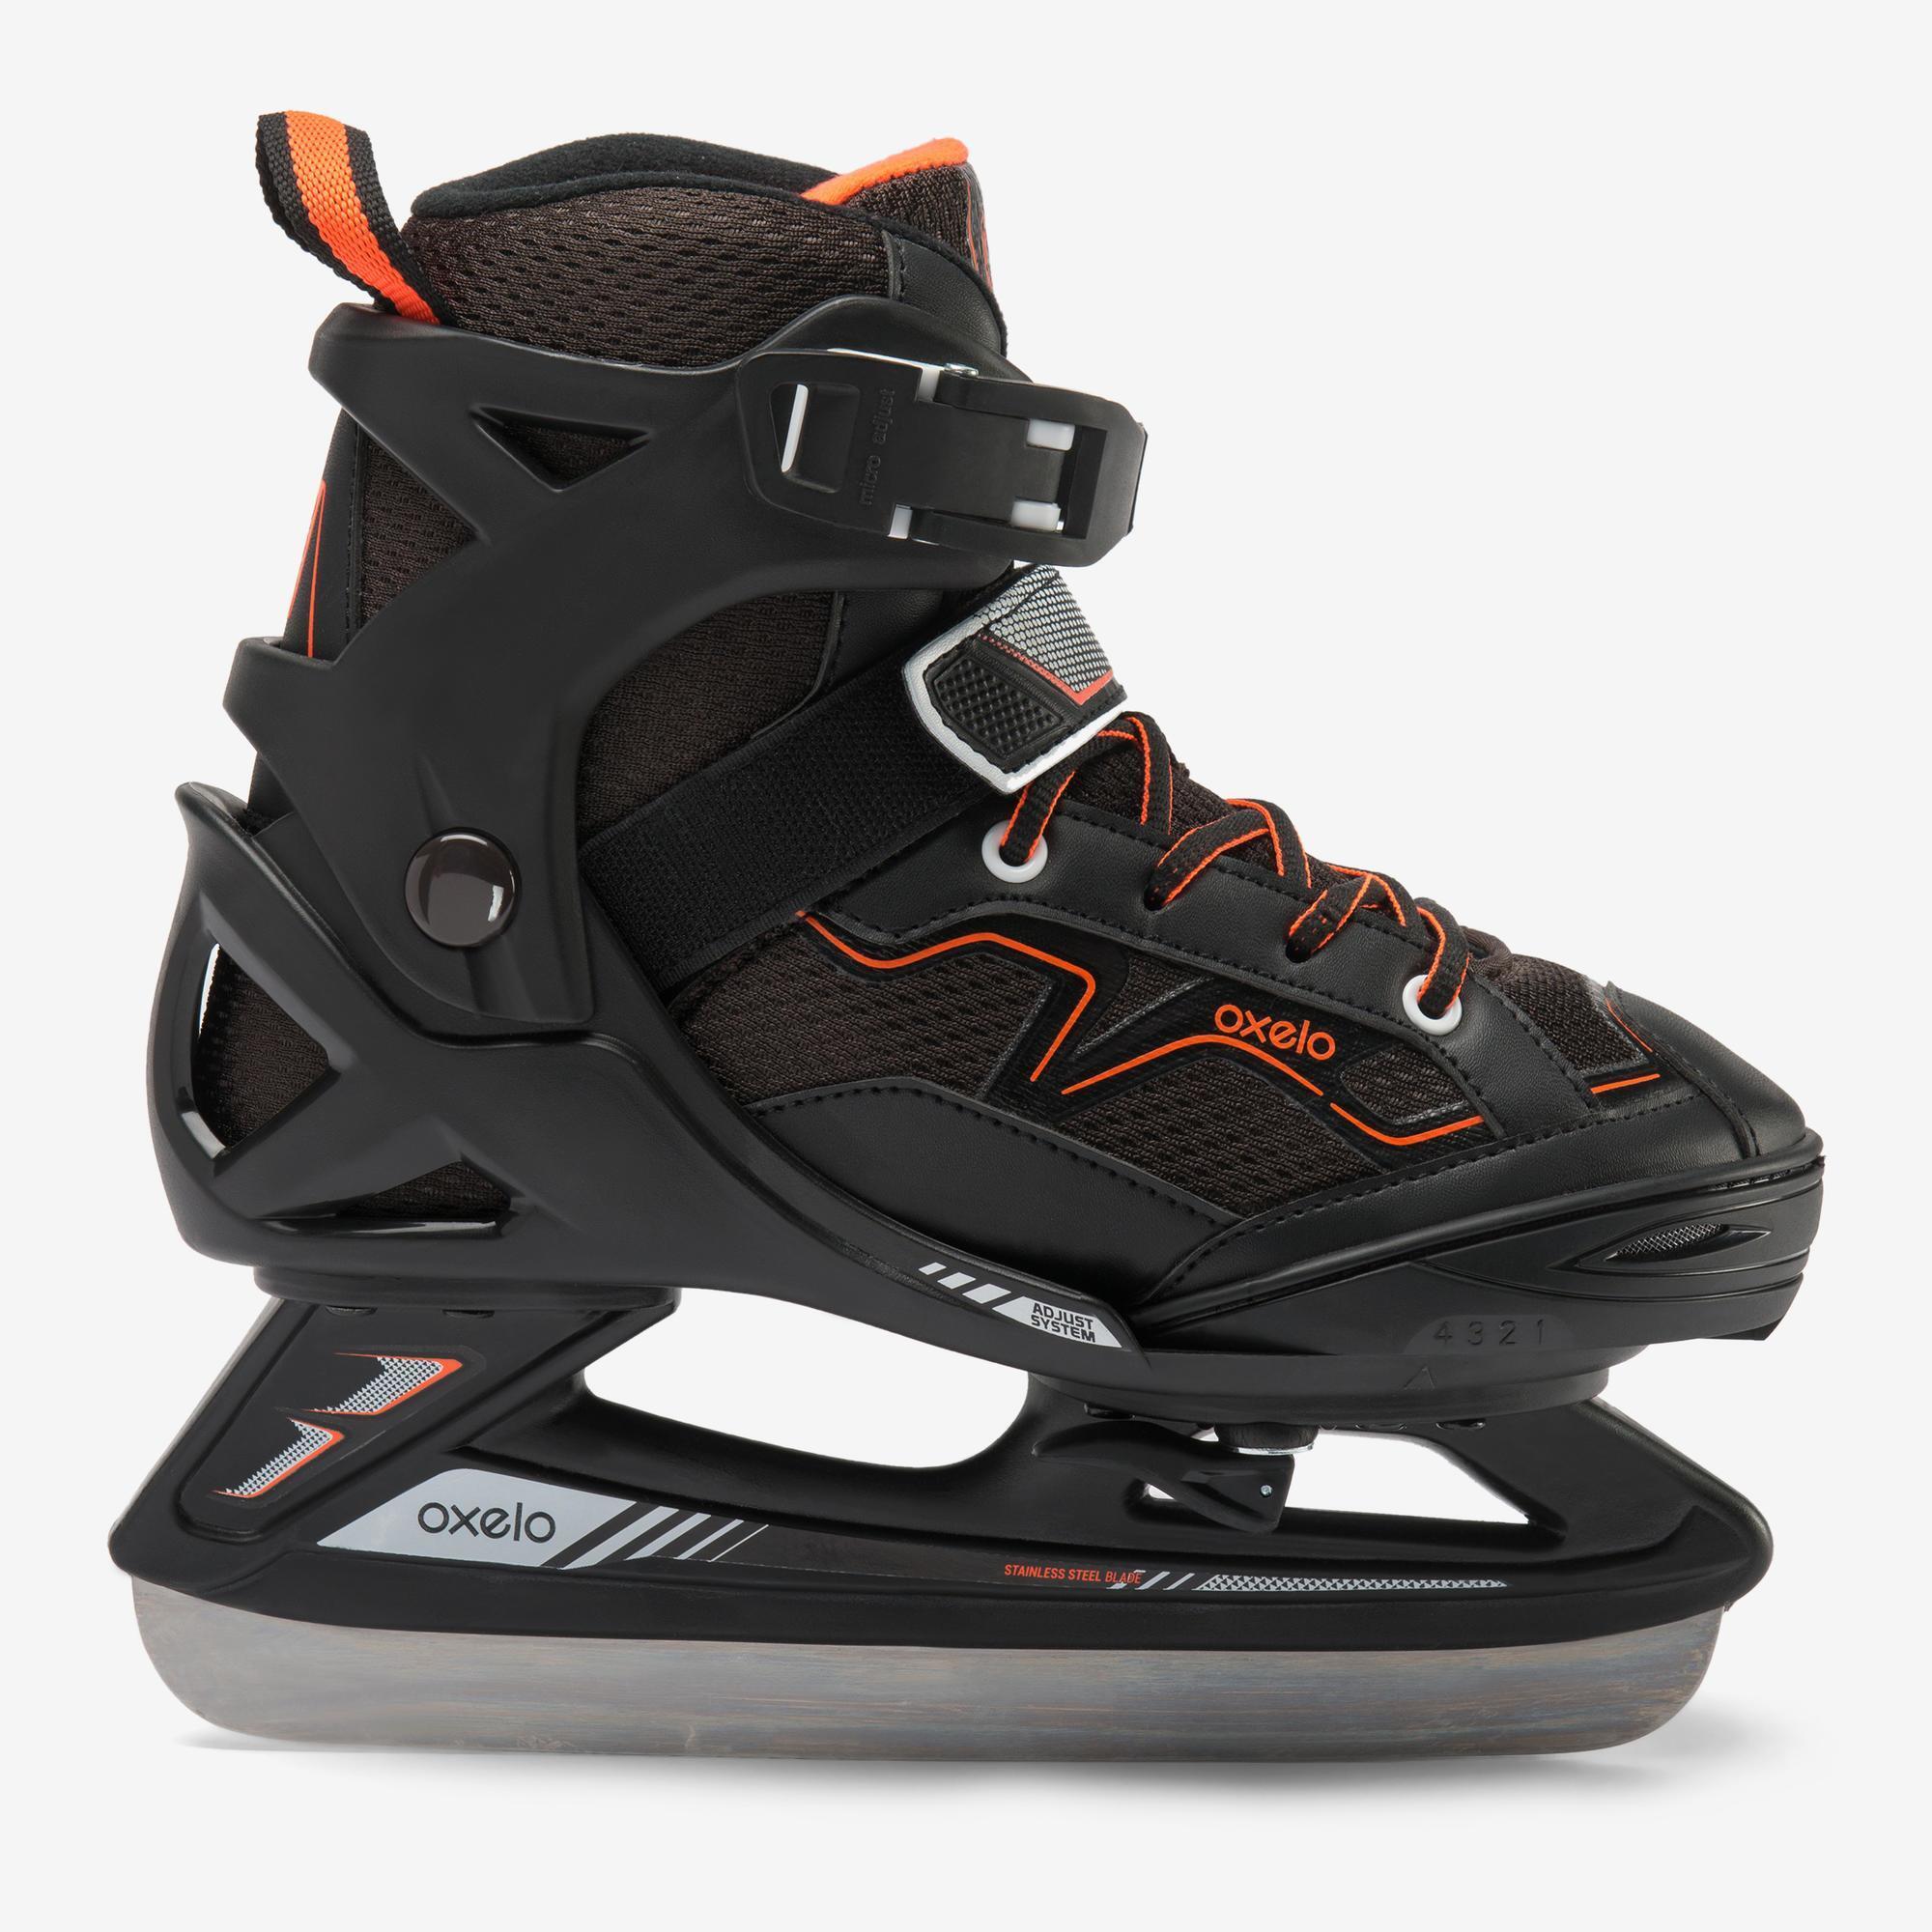 Kids' Ice Skates Fit 100 - Black/Orange 2/8